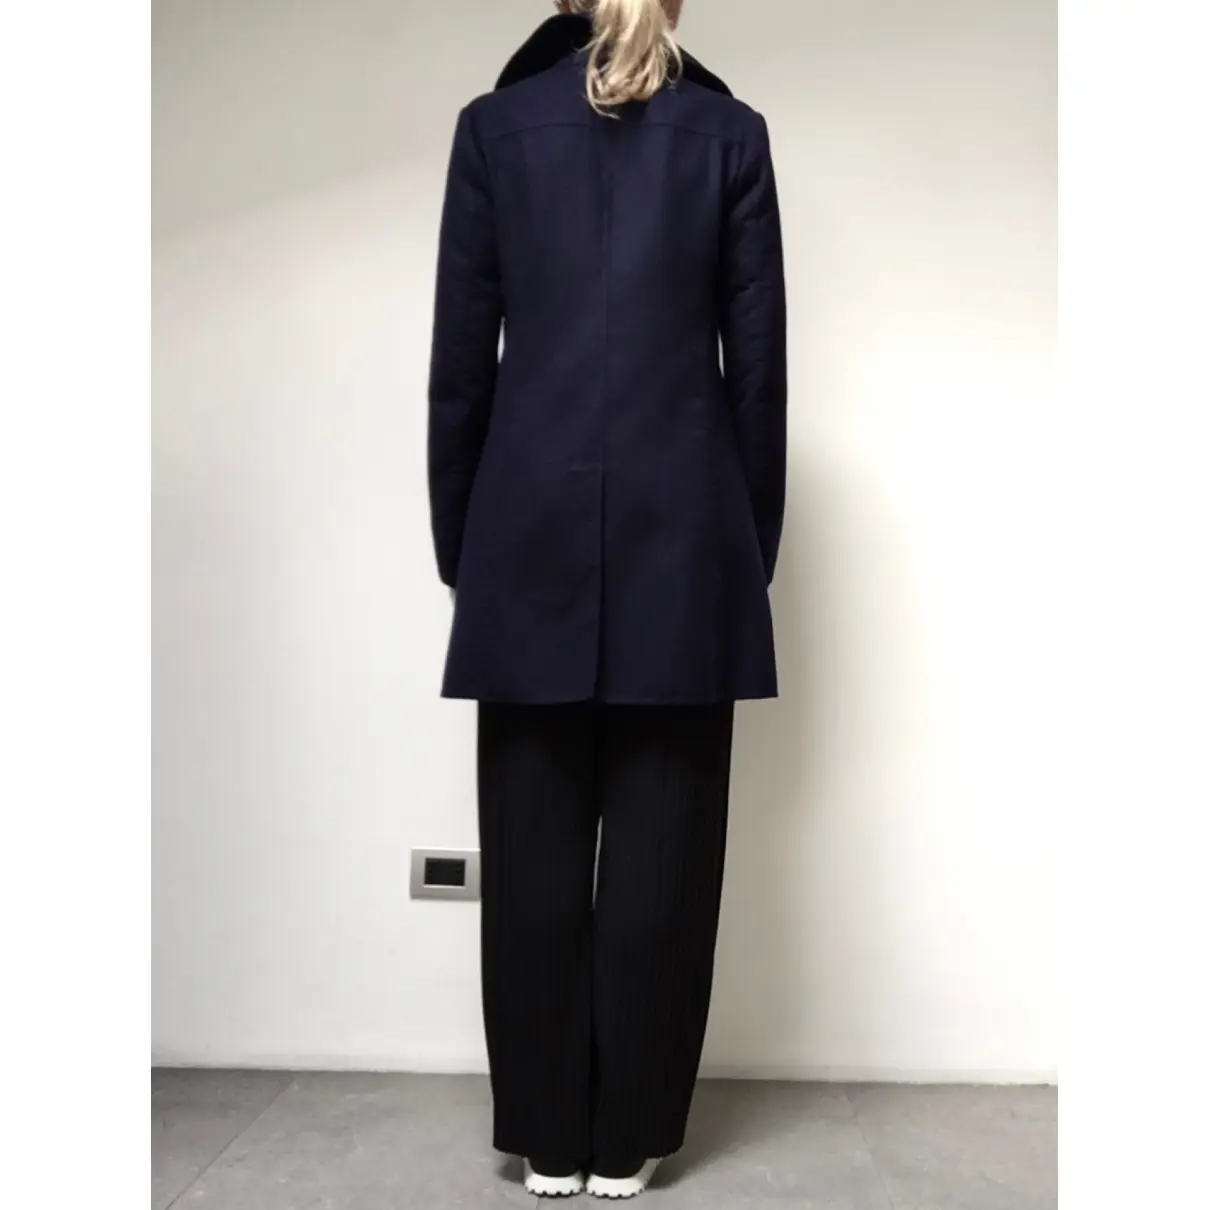 Buy Jil Sander Cashmere coat online